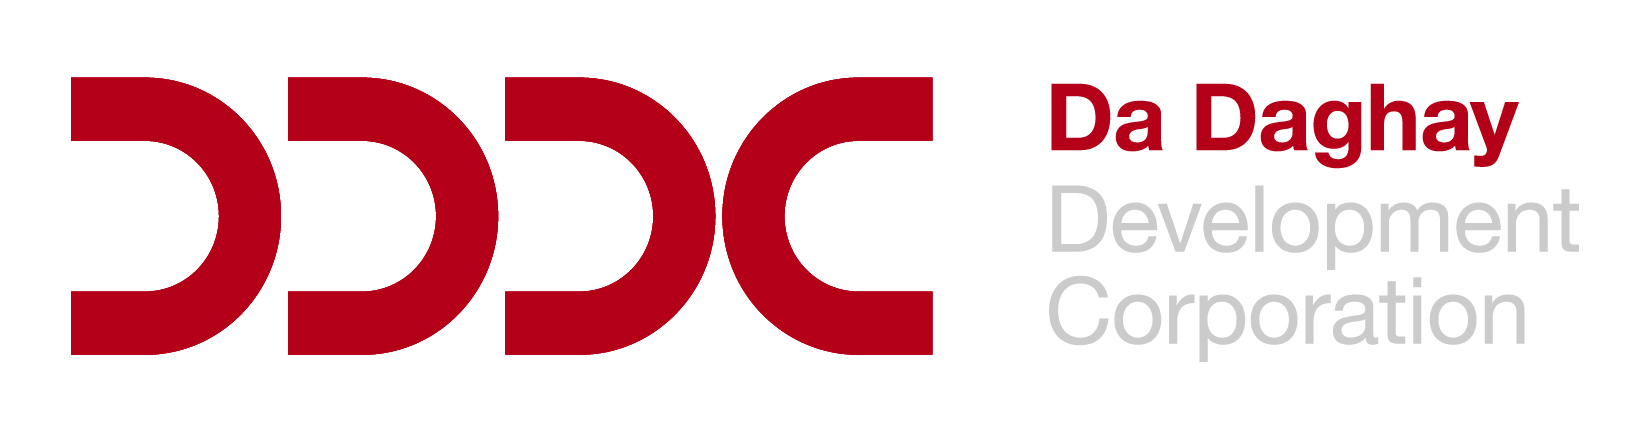 Da Daghay Development Corporation logo